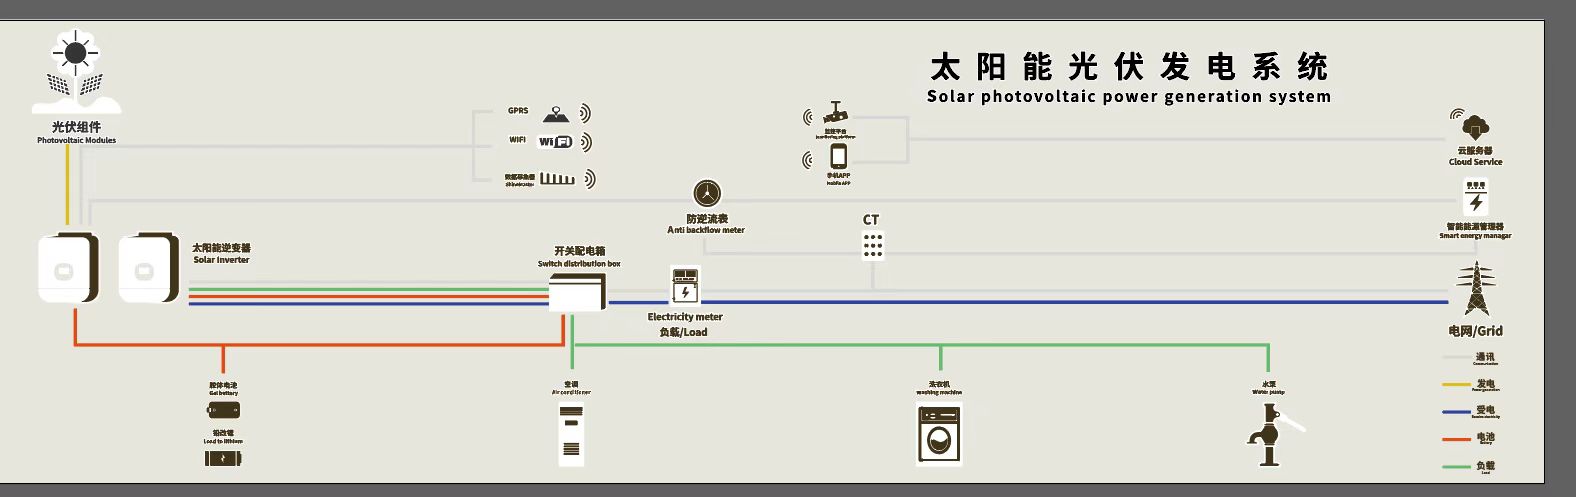 Système d'alimentation solaire 5kw complet pour un usage domestique